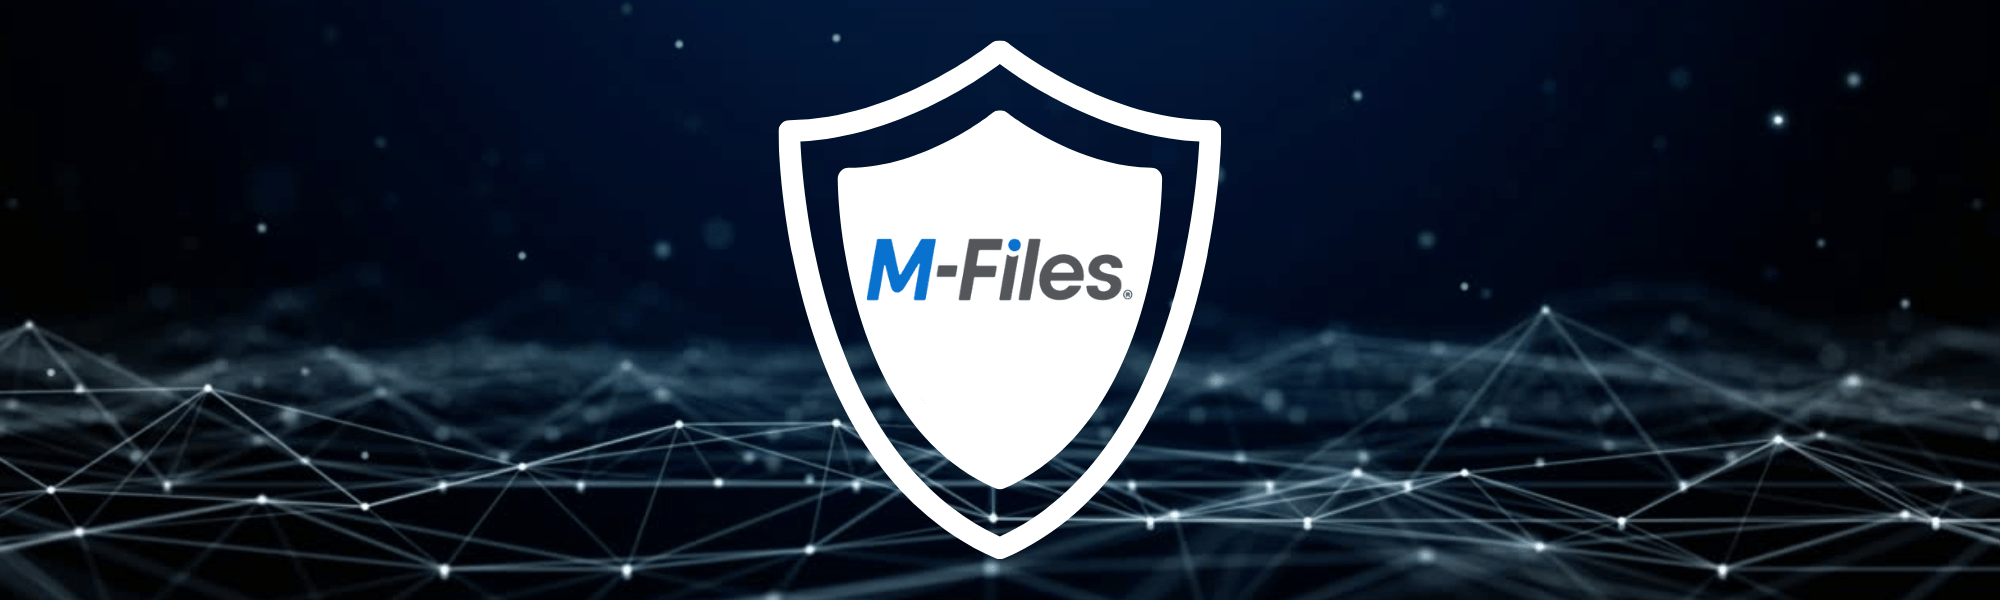 MechSoft Blog - Siber Güvenlik Nedir? - M-Files ile Güvenli Veri Yönetimi